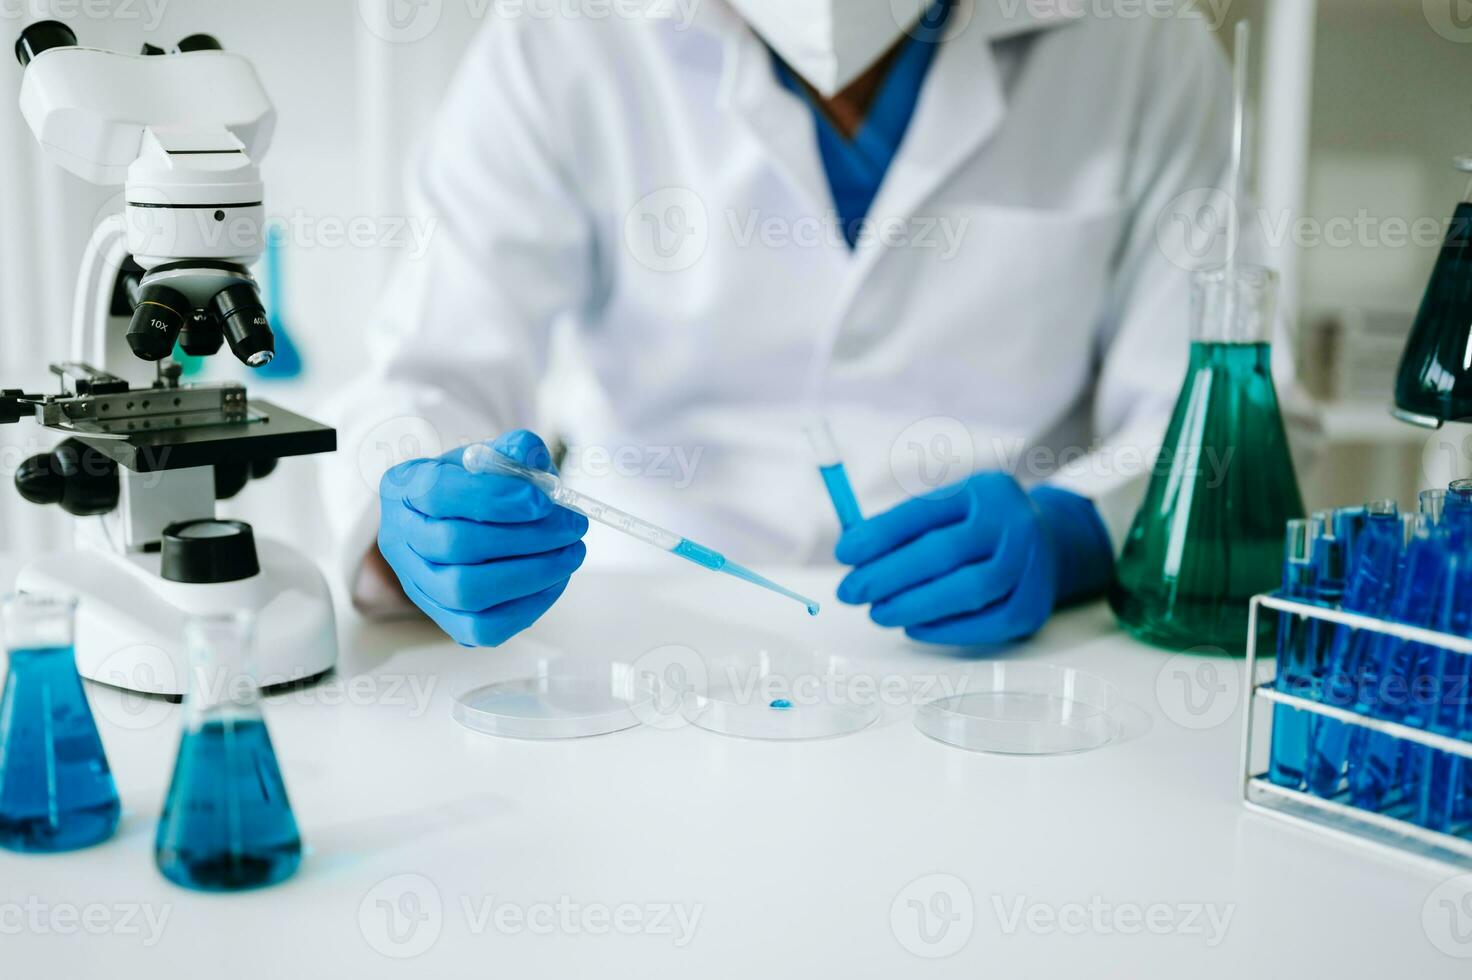 forskare blandning kemisk vätskor i de kemi labb. forskare arbetssätt i de kemisk en laboratorium foto